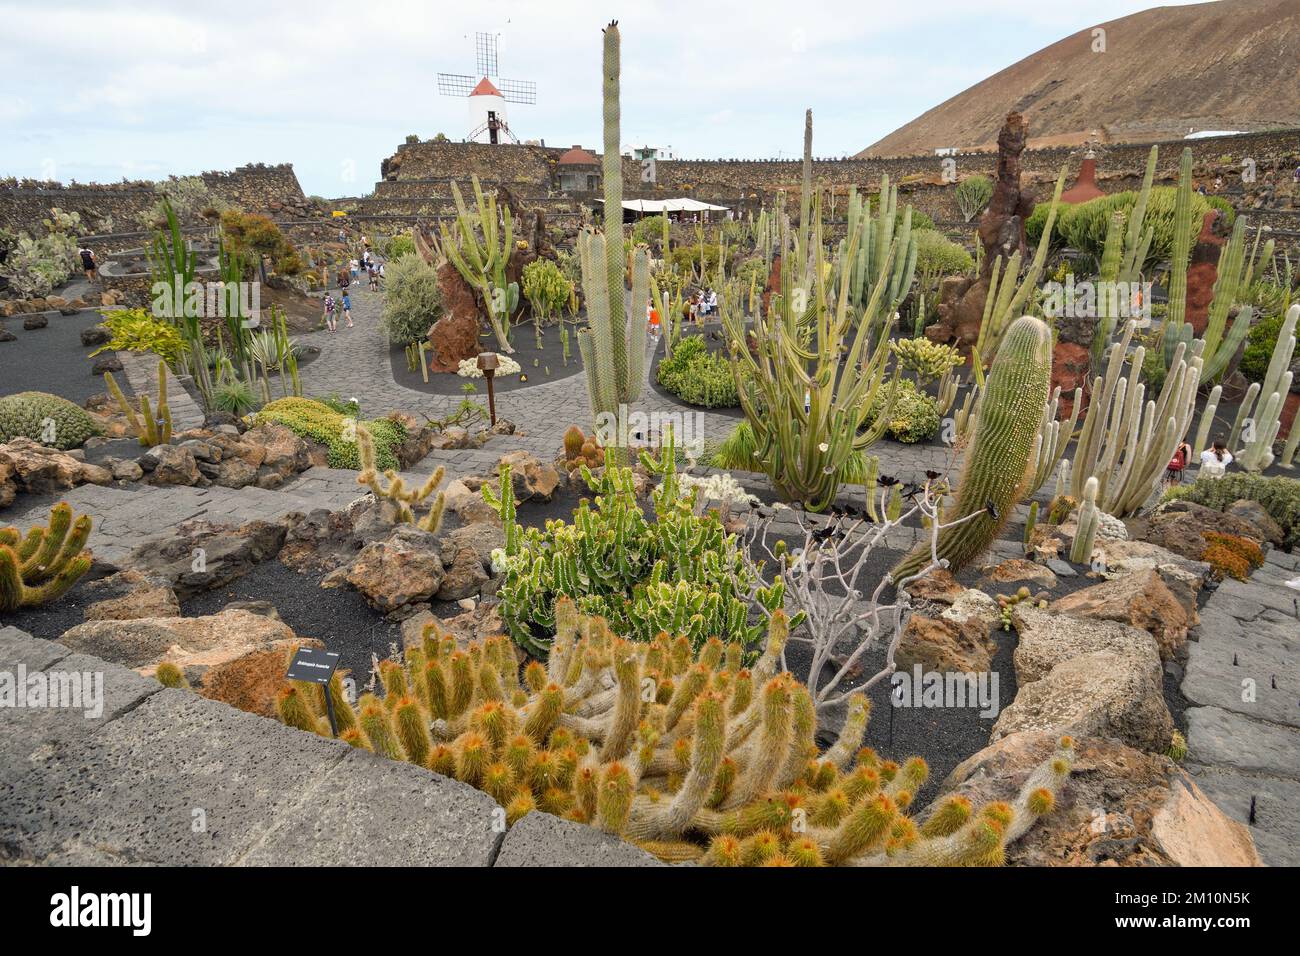 Cactus garden in Lanzarote island Stock Photo